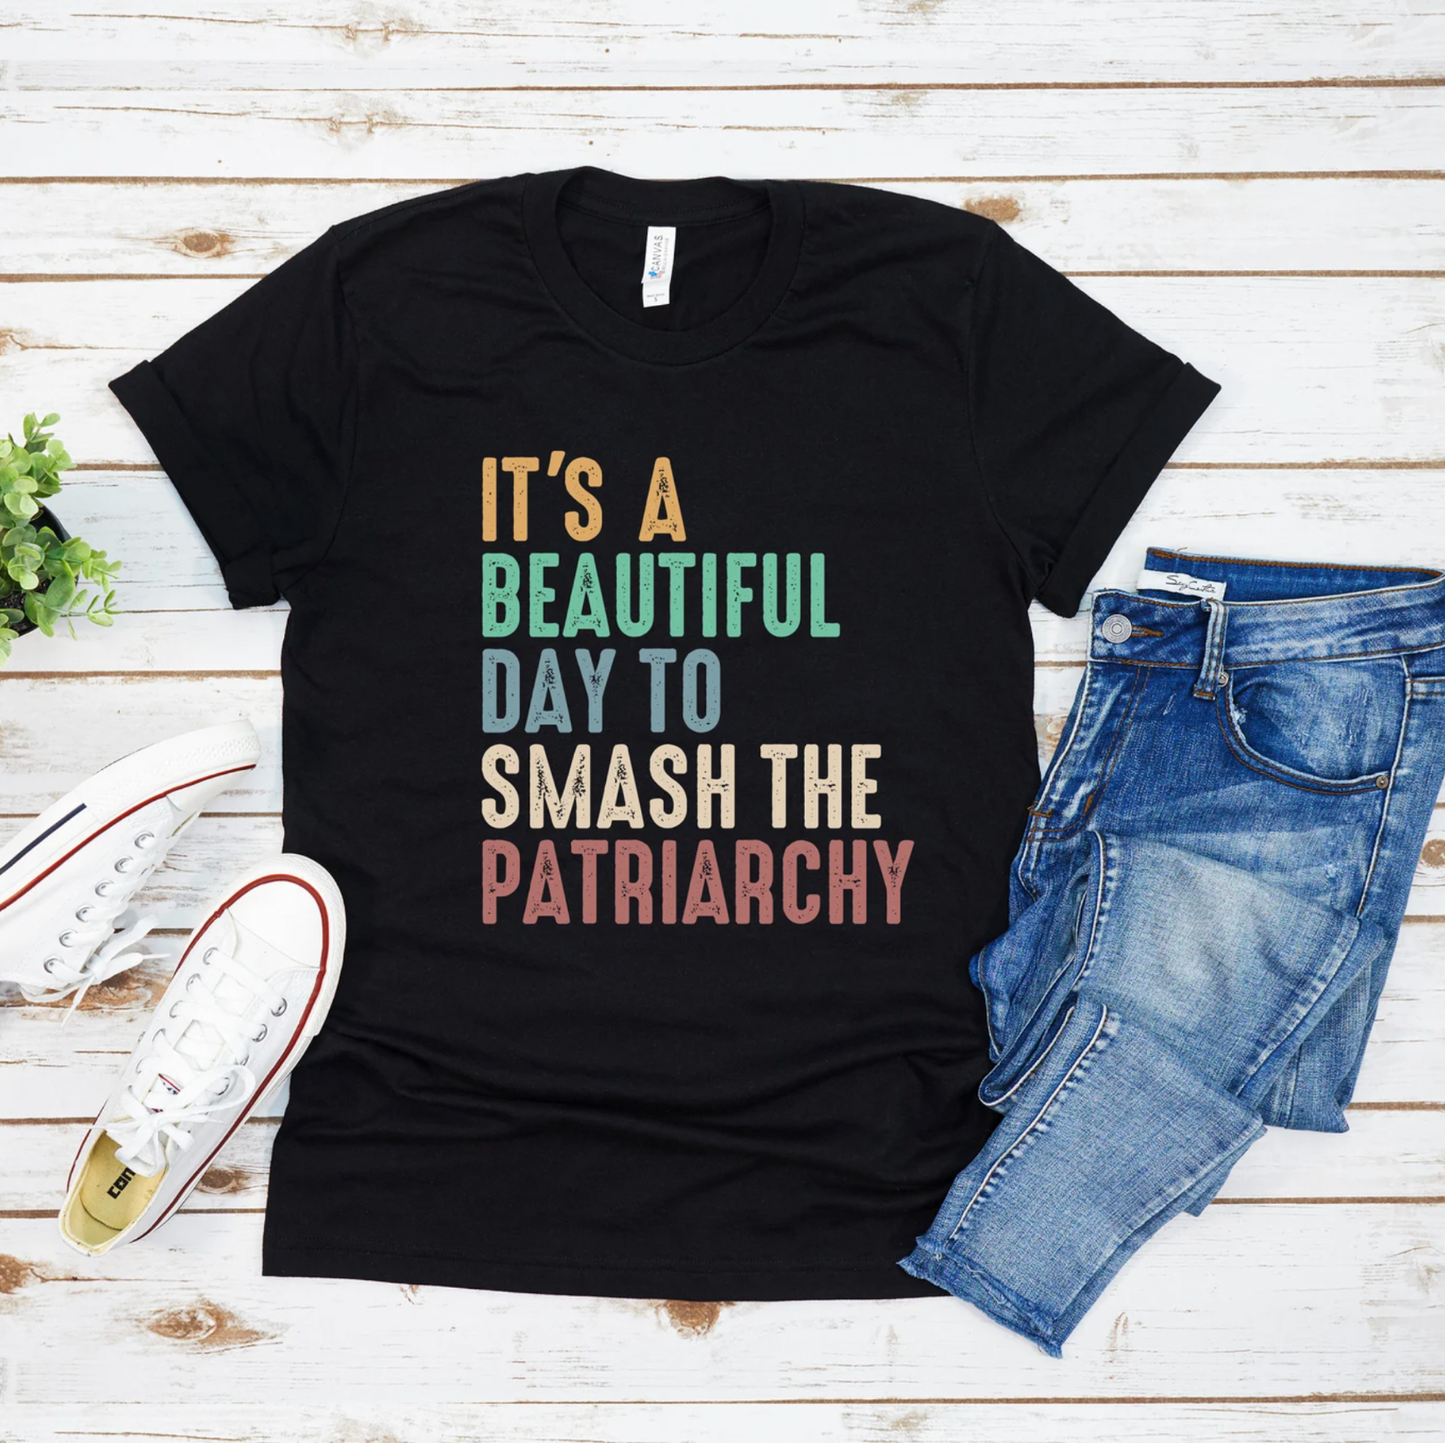 Smash The Patriarchy - Tee